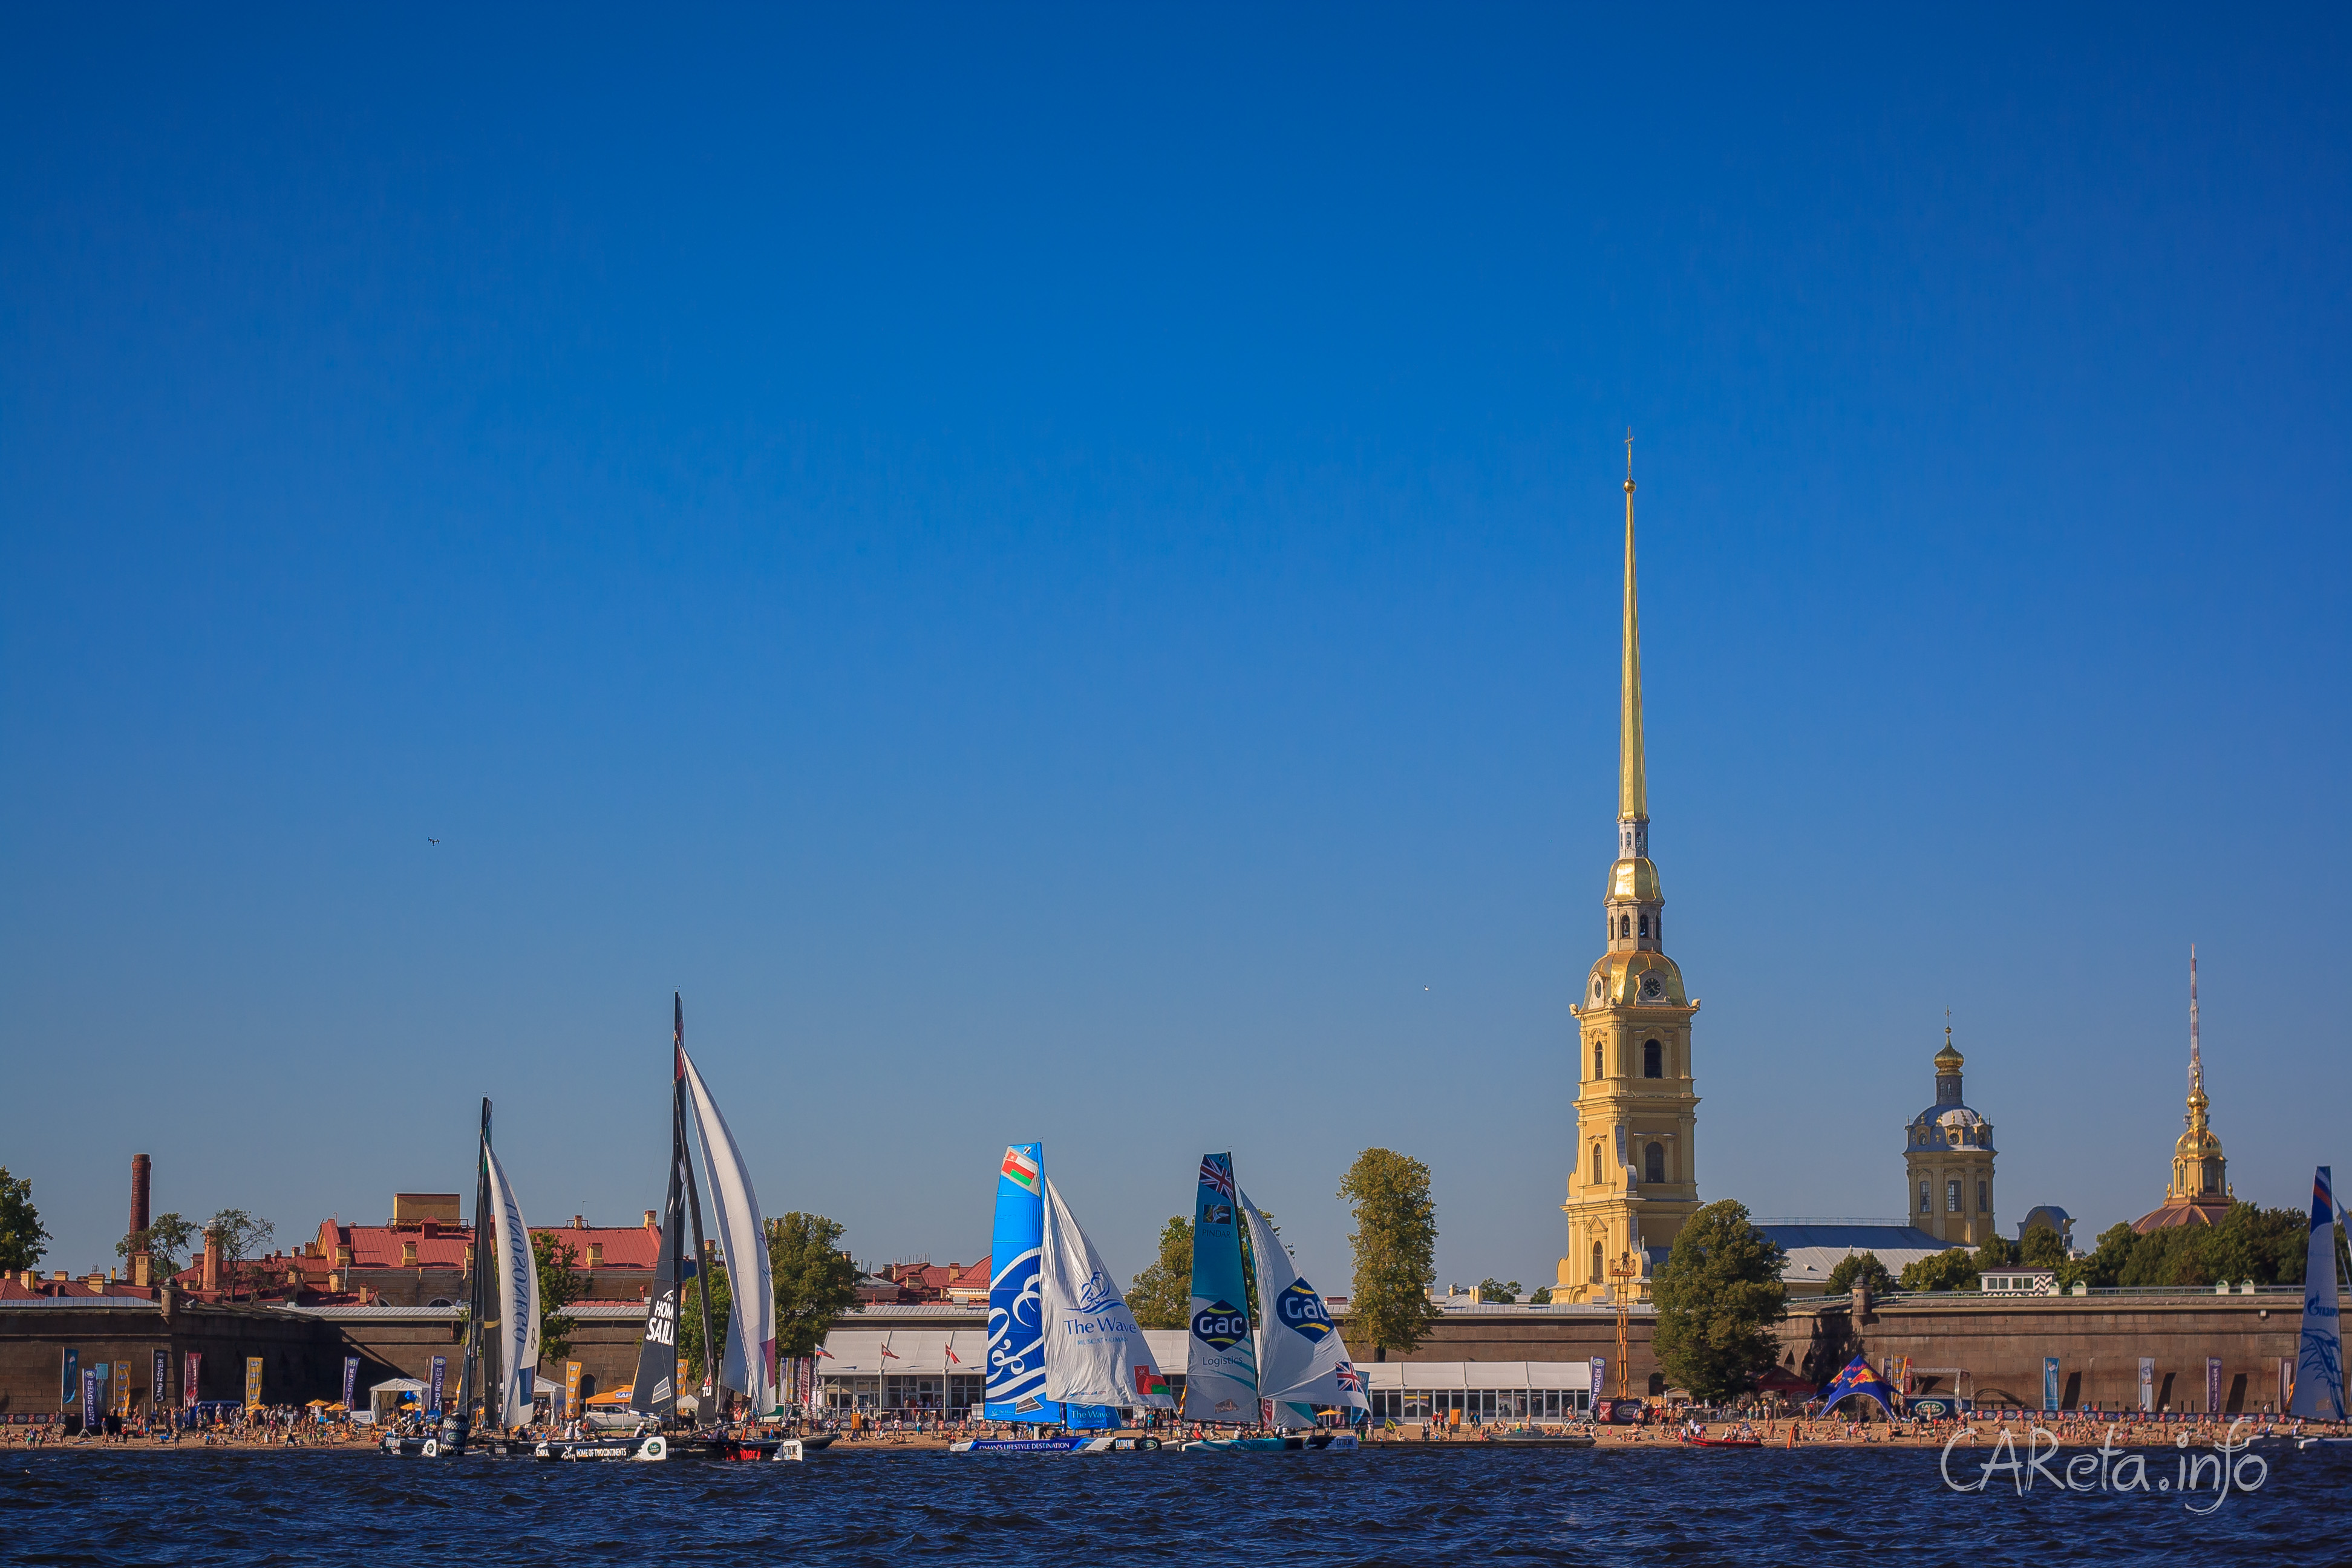 Гонки Extreme Sailing Series  возвращаются в Петербург на «парящих» катамаранах